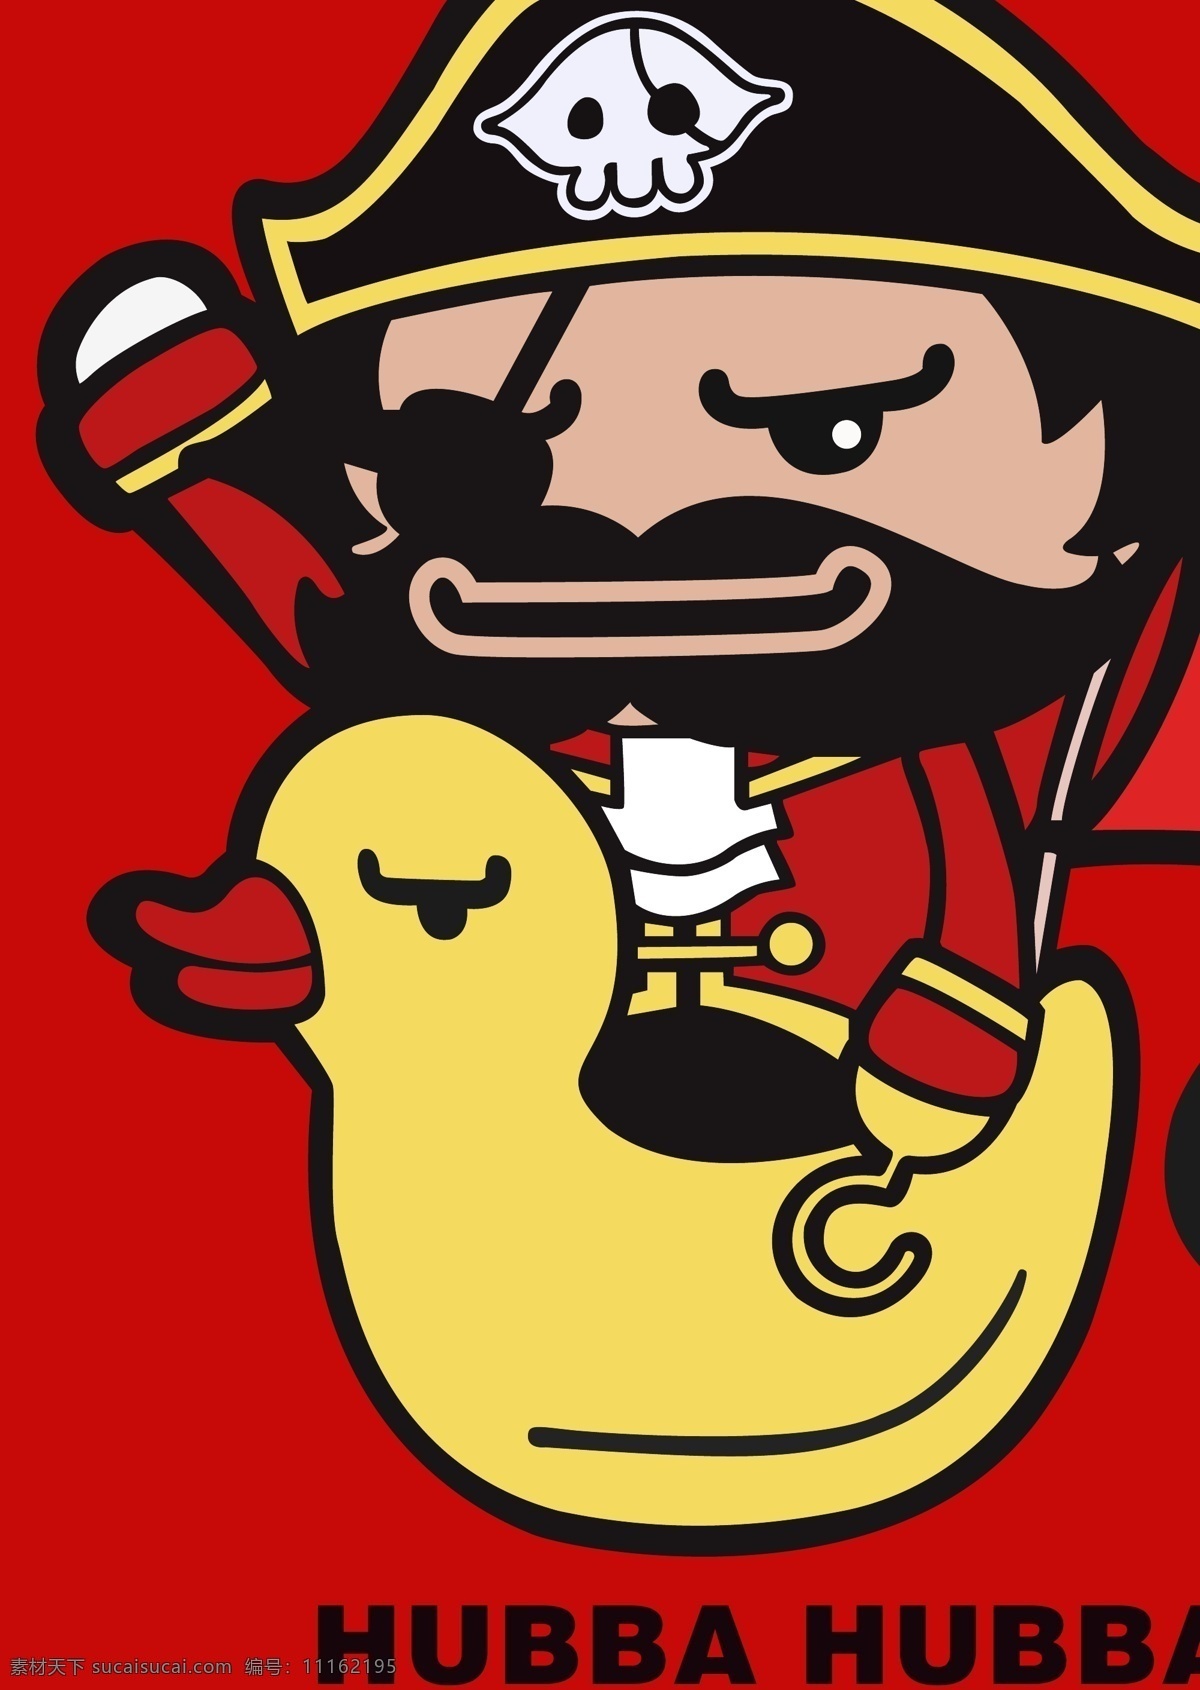 海盗船长 海盗 海贼王 梦想船 卡通形象 手绘插画 漂流鸭 小鸭子 海盗标志 海盗徽 海盗旗 加勒比海盗 卡通图案 卡通设计 矢量